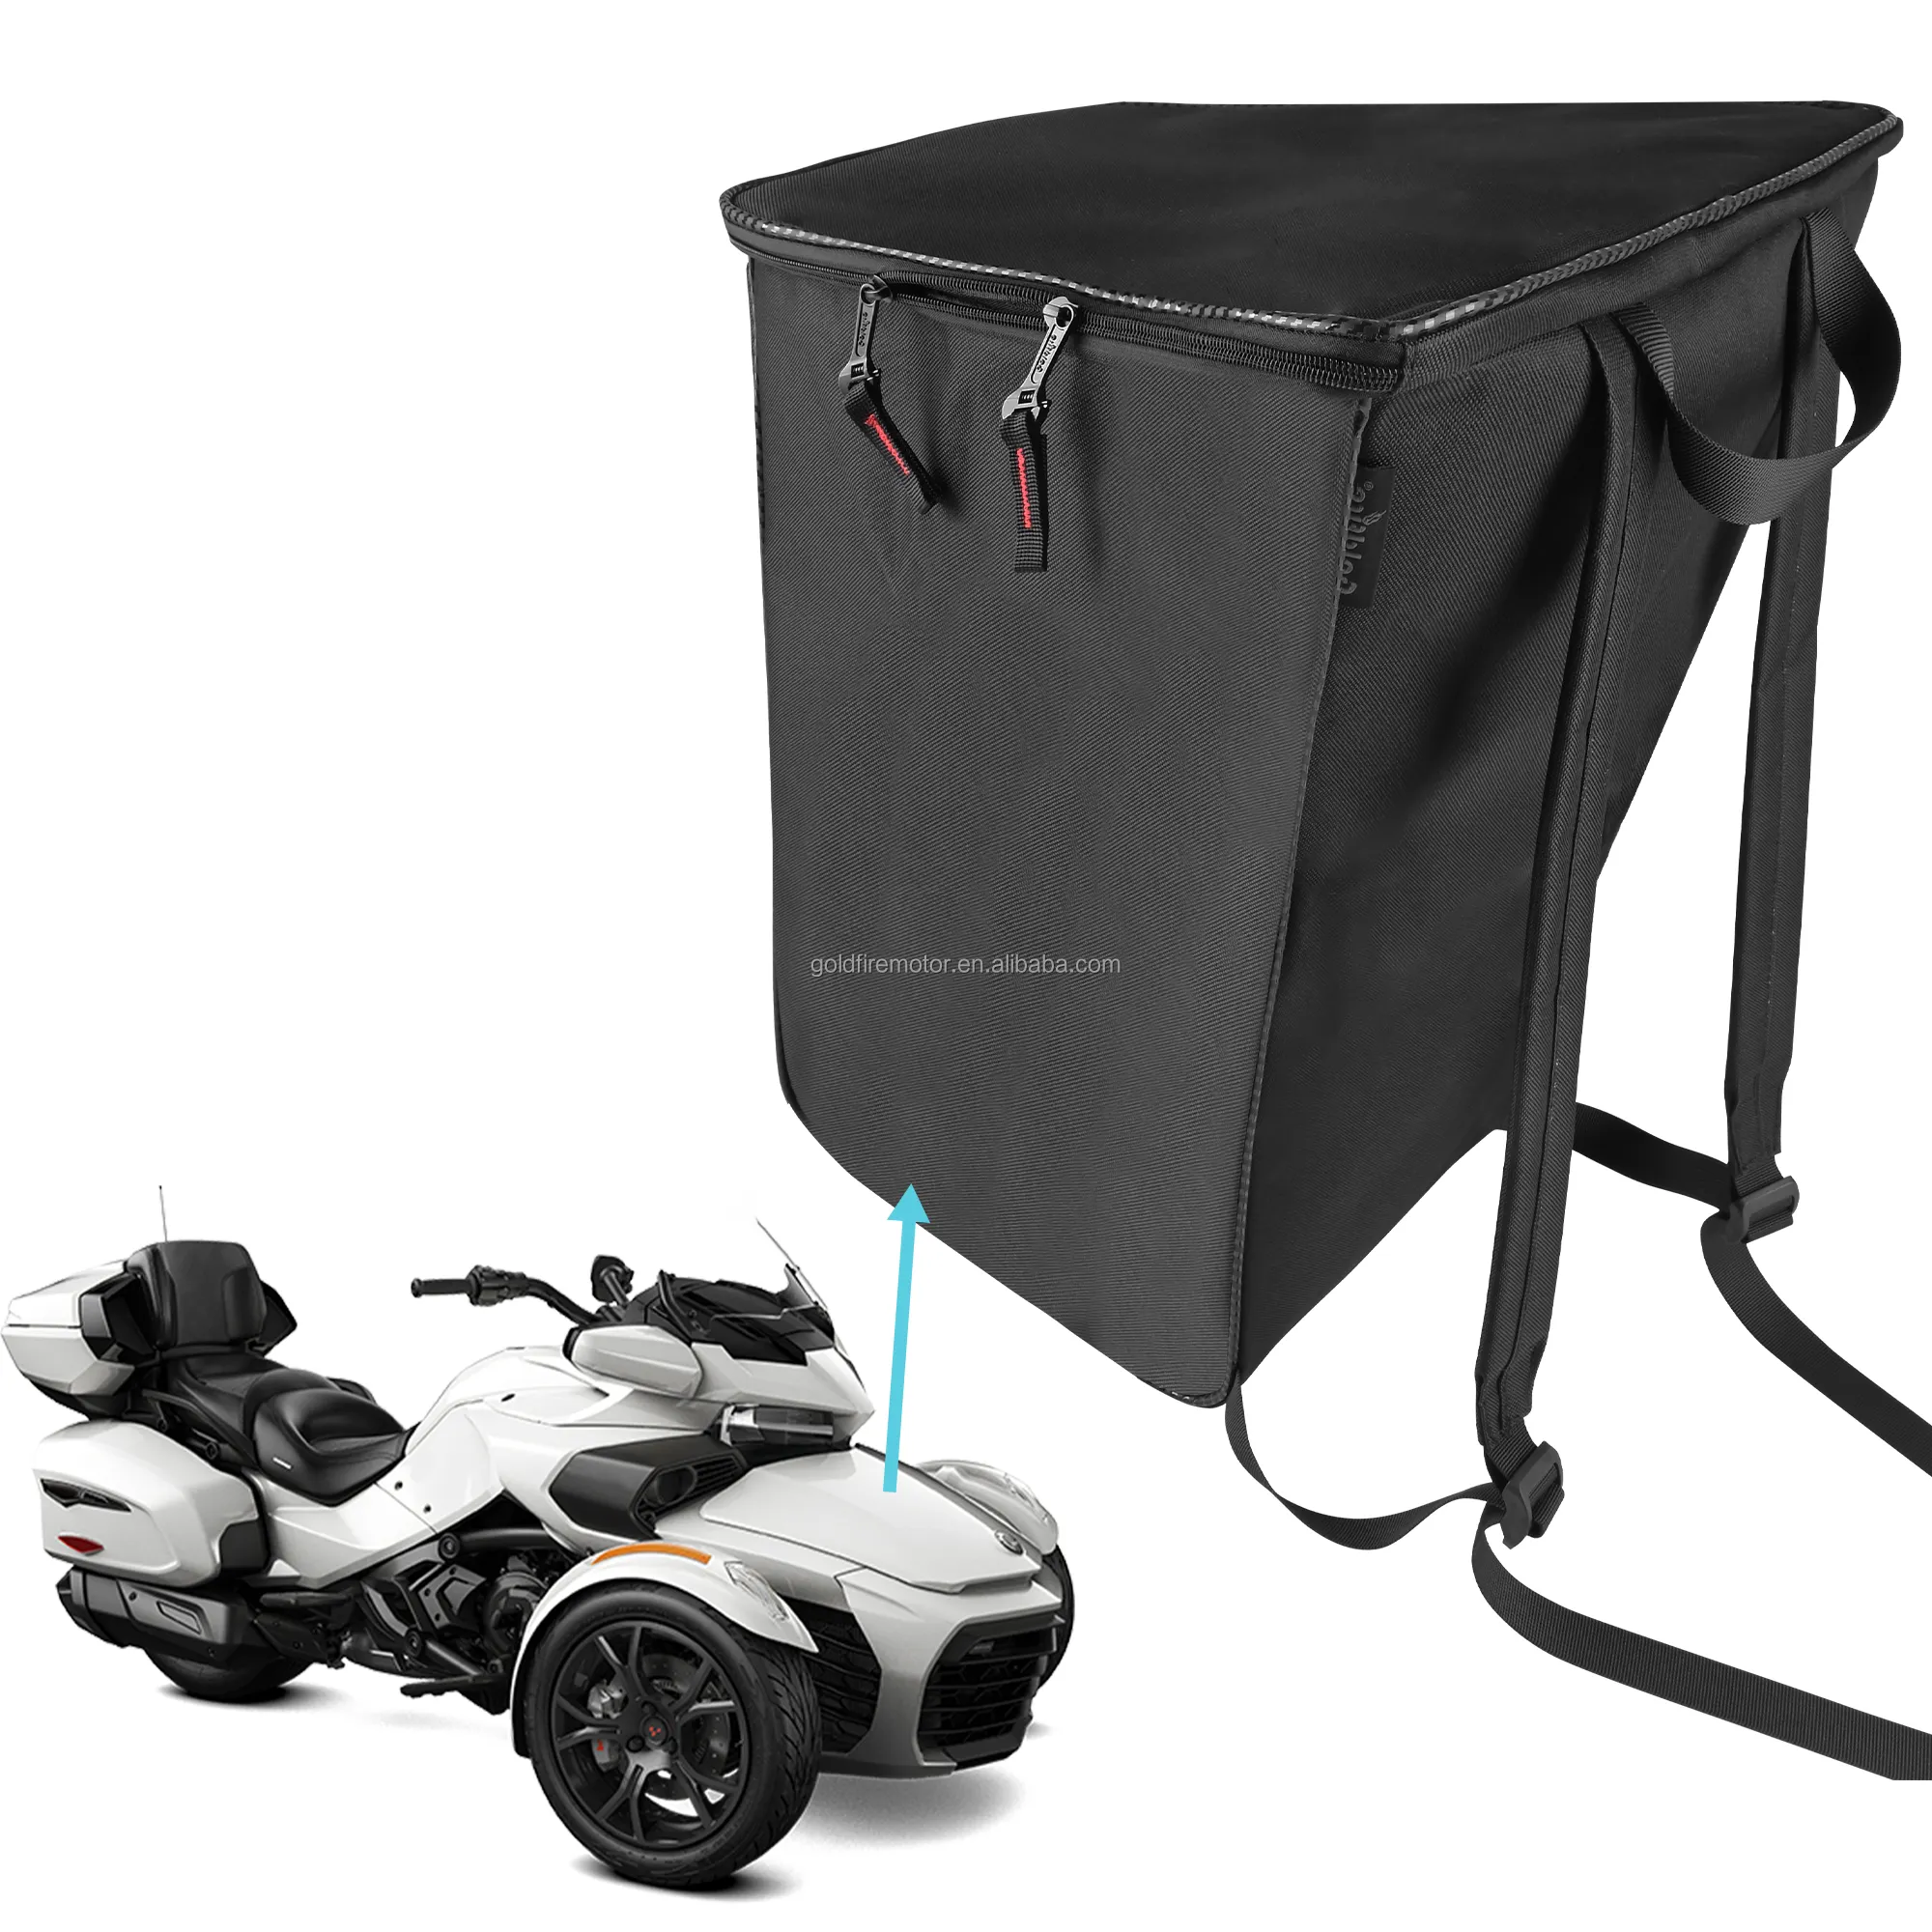 Sac de rangement avant amovible pour bagages Can Am Spyder RT/RT-L/RT-S 2010-19 avec sangles de sac à dos Accessoires de moto